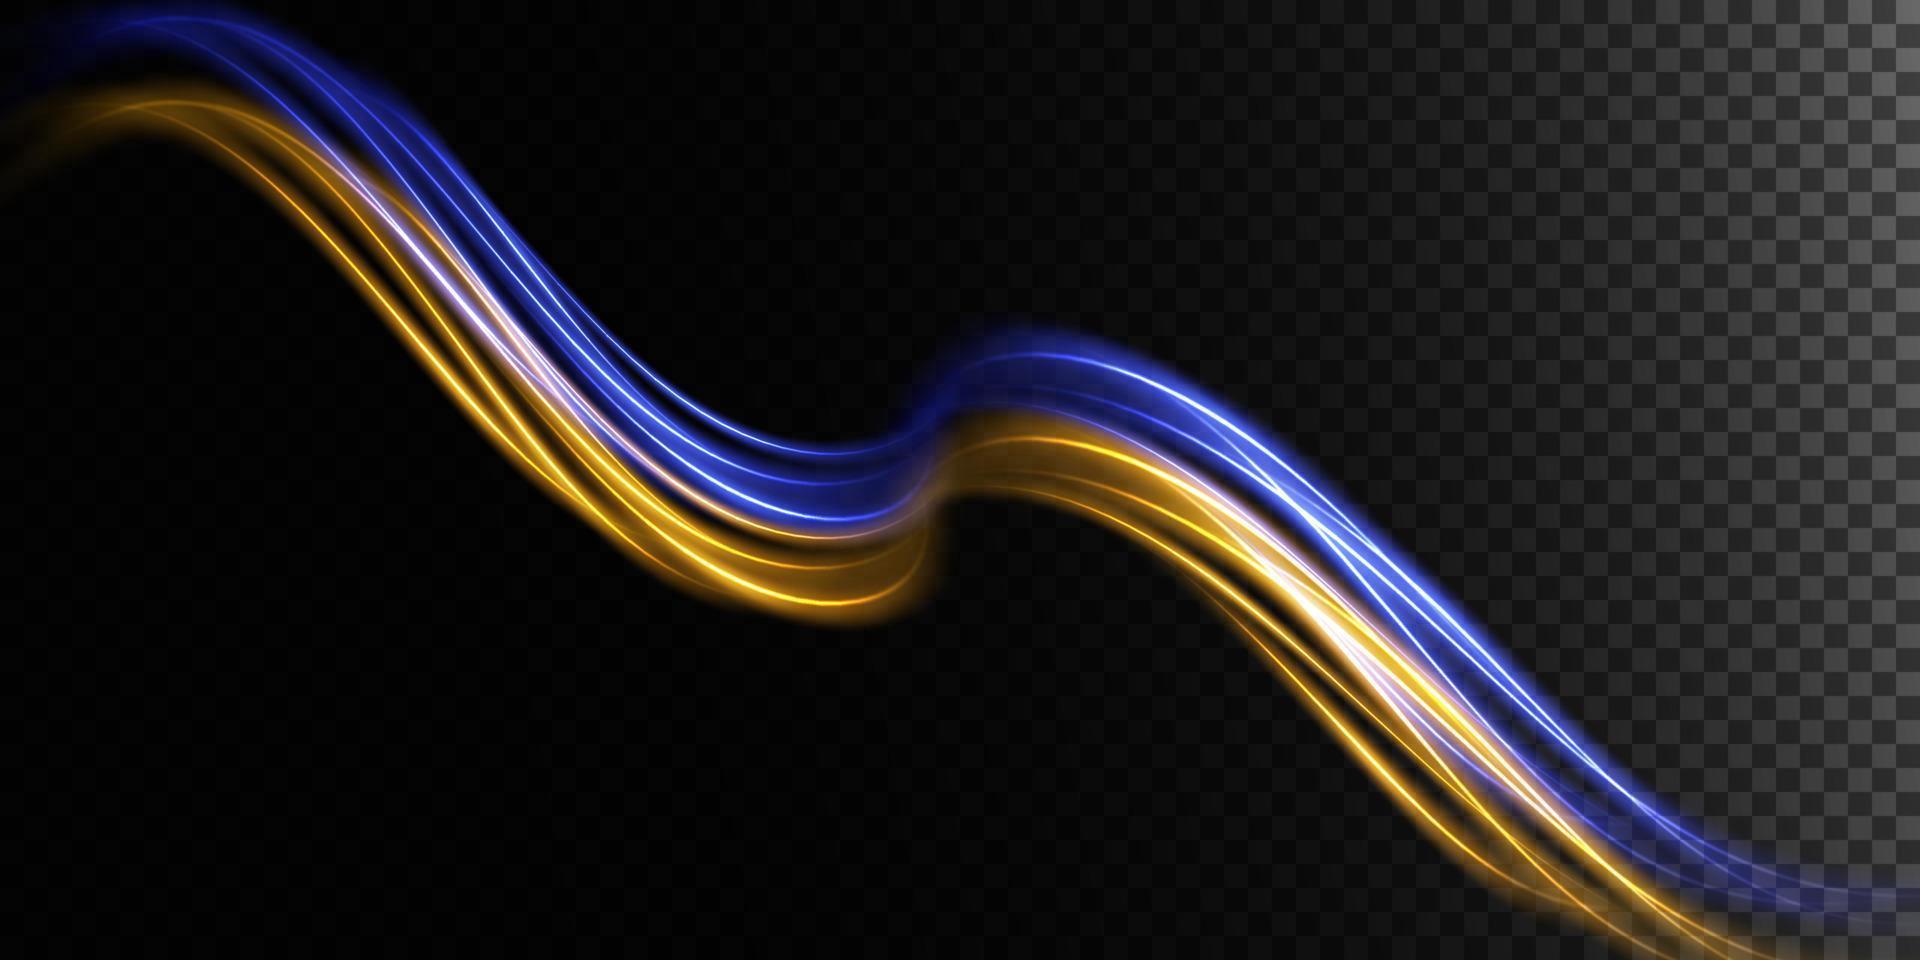 abstrakt ljus rader av rörelse och hastighet i blå och guld. ljus varje dag lysande effekt. halvcirkelformig Vinka, ljus spår kurva virvla runt vektor